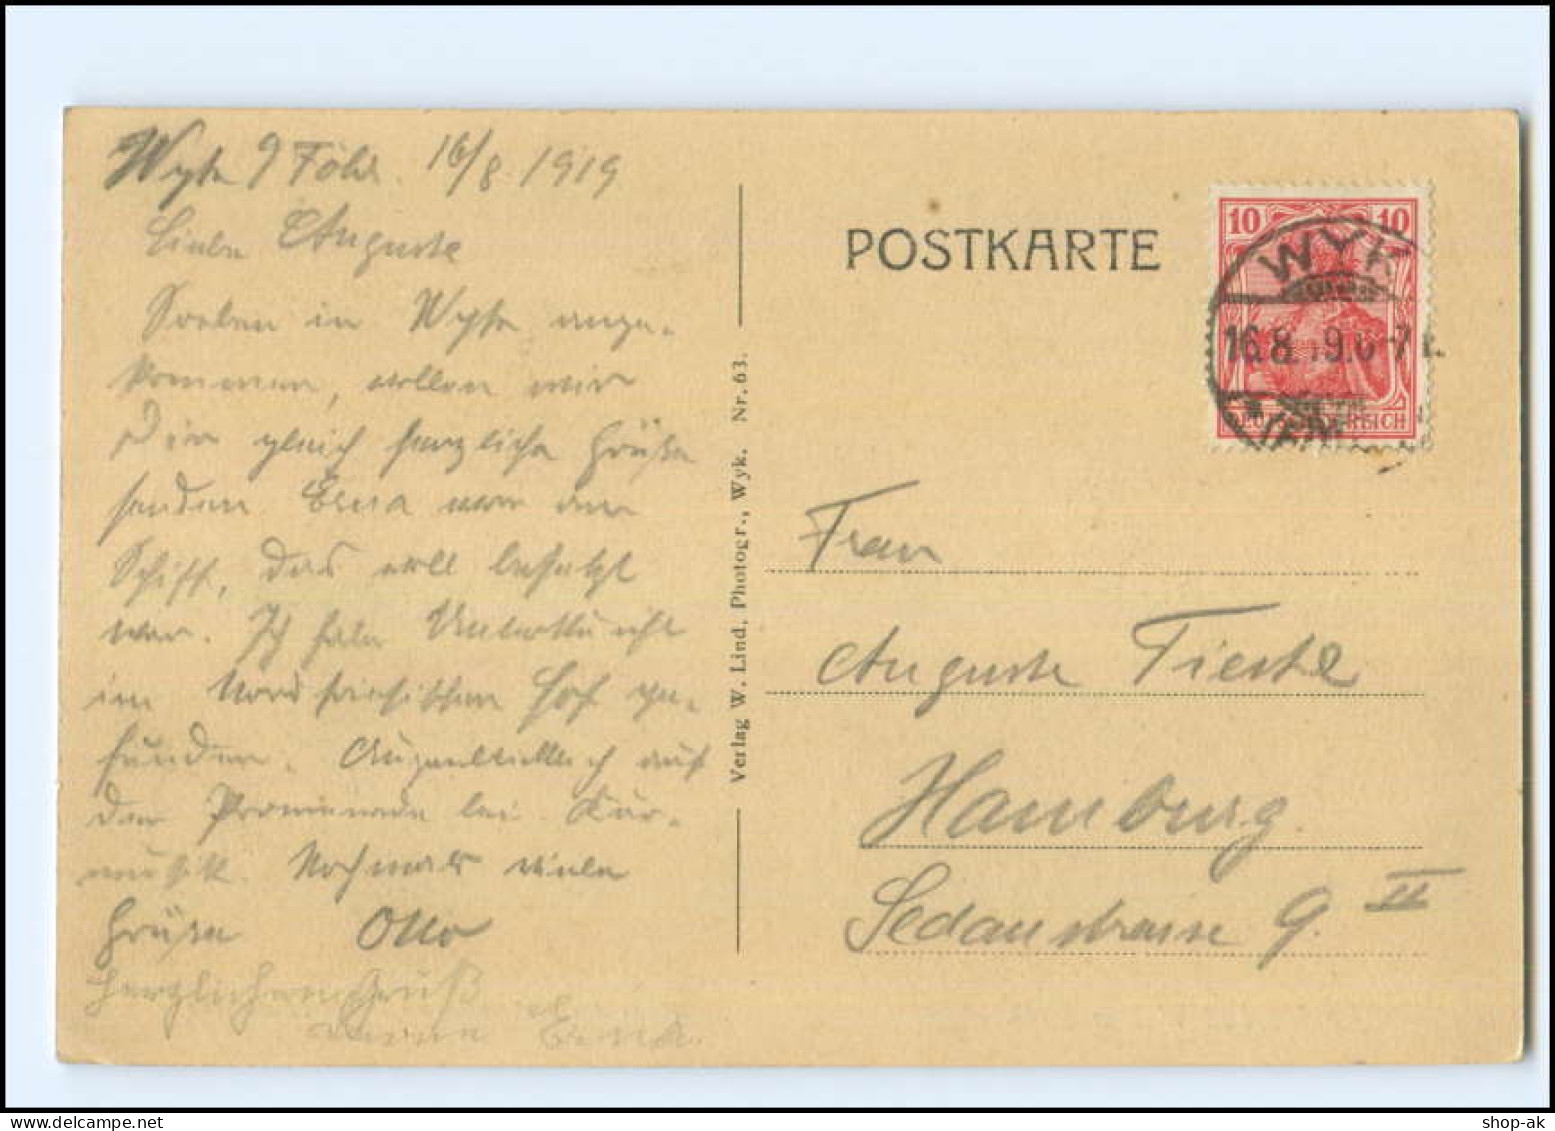 Y16779/ Wyk Auf Föhr Haus Des Seehundjägers David Hinrichsen 1919 AK - Föhr